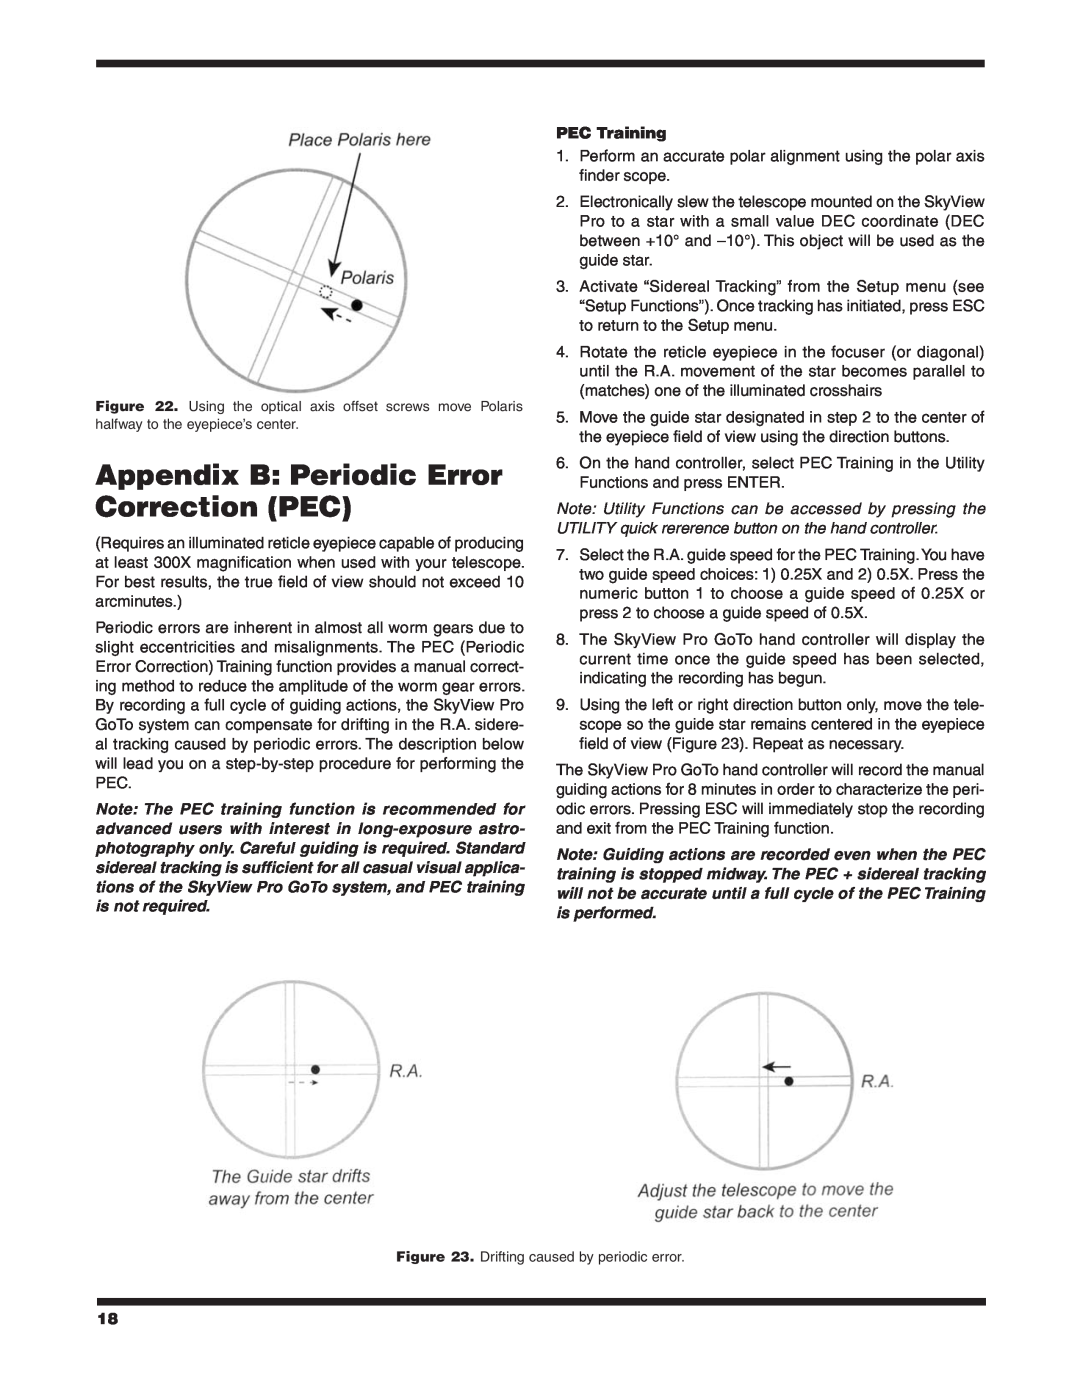 Orion 7817 instruction manual Appendix B Periodic Error Correction PEC, PEC Training 